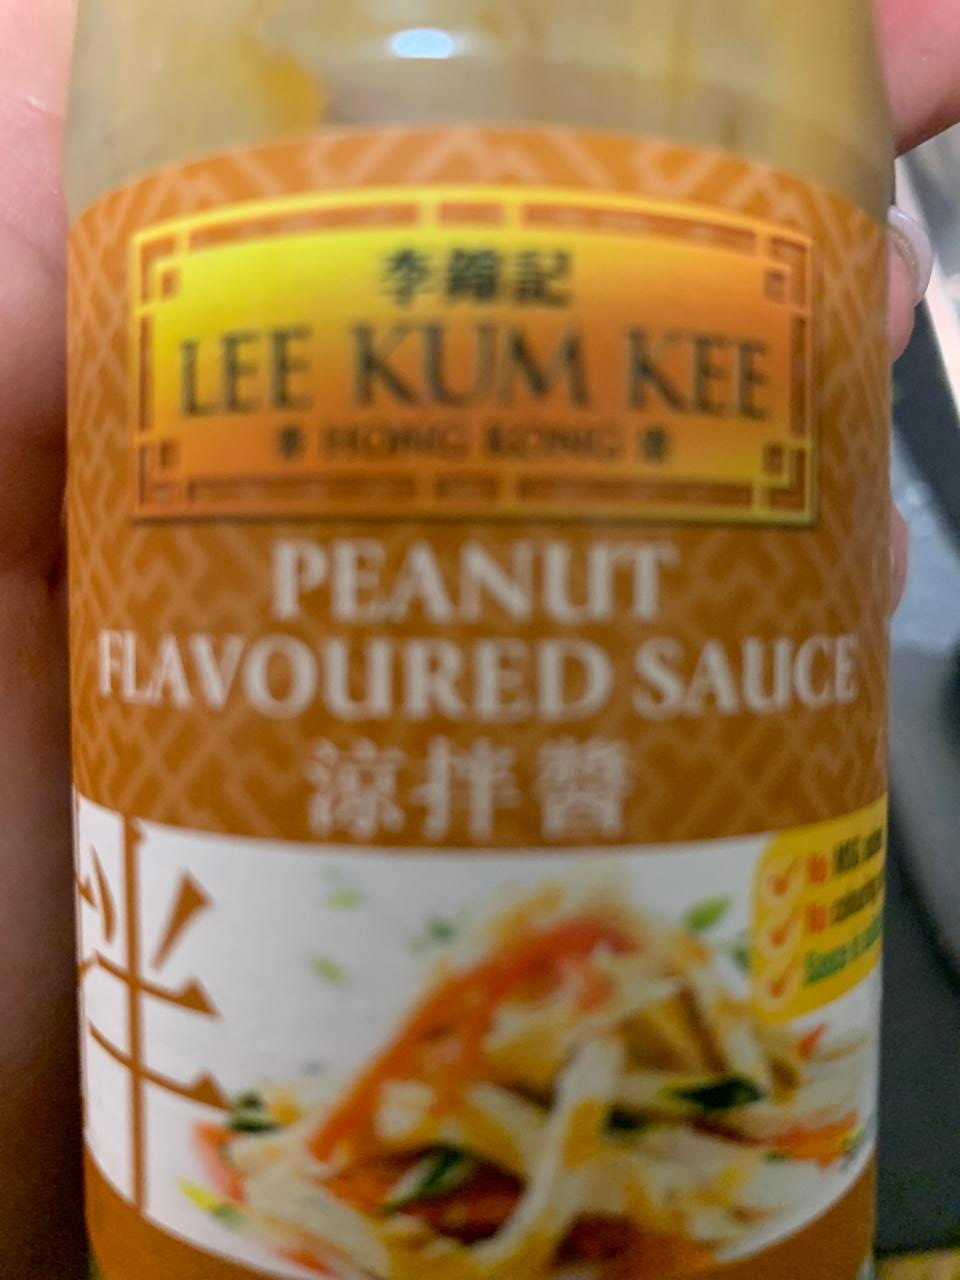 Fotografie - Peanut Flavoured Sauce Lee Kum Kee